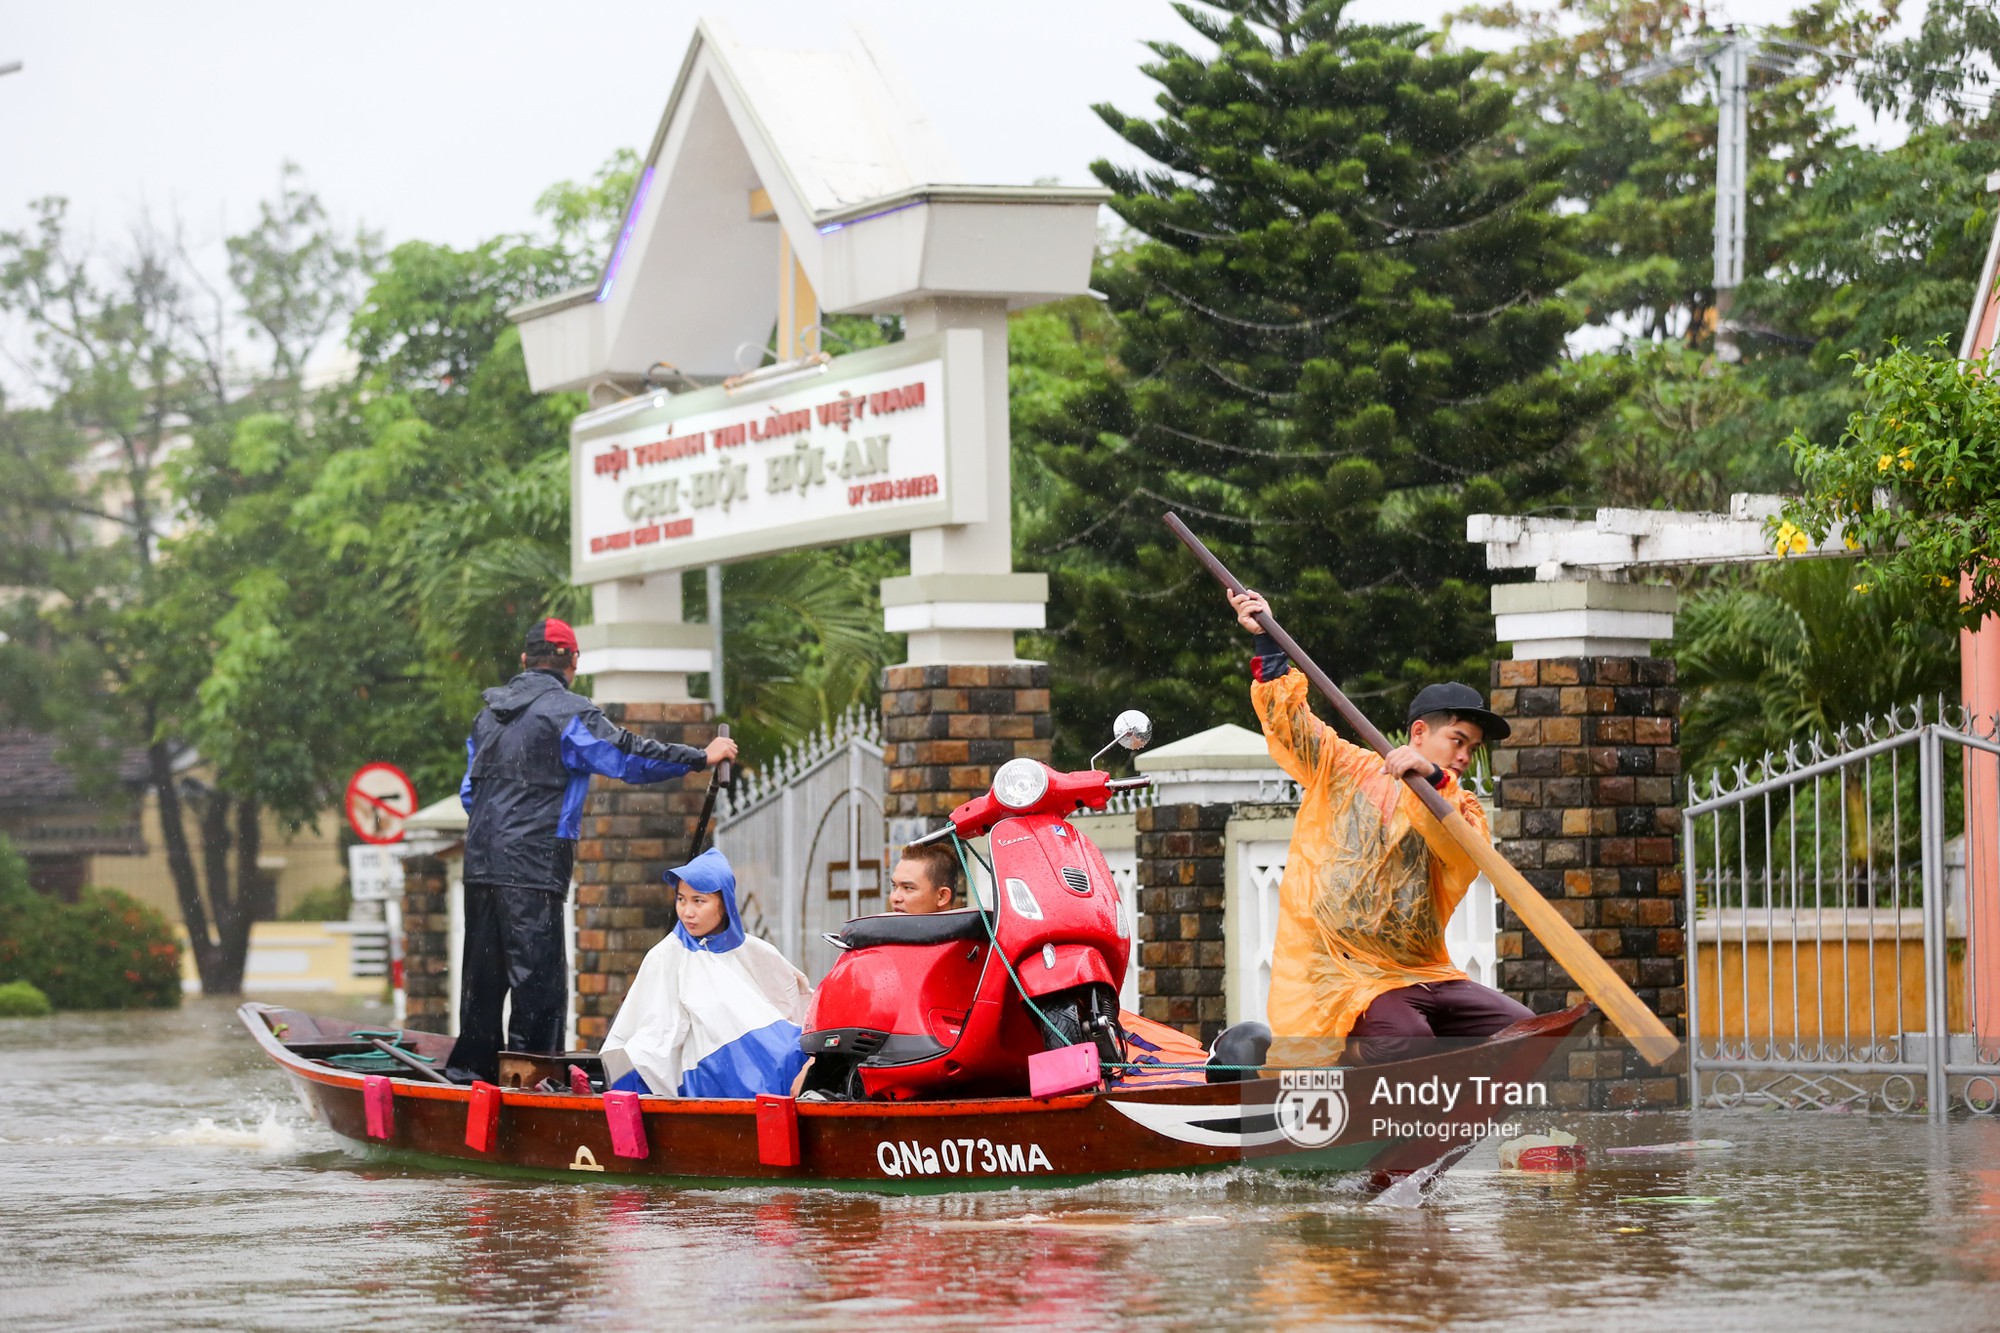 Chùm ảnh: Hội An nước ngập thành sông do ảnh hưởng của bão, người dân và du khách chật vật dùng thuyền bè di chuyển - Ảnh 13.